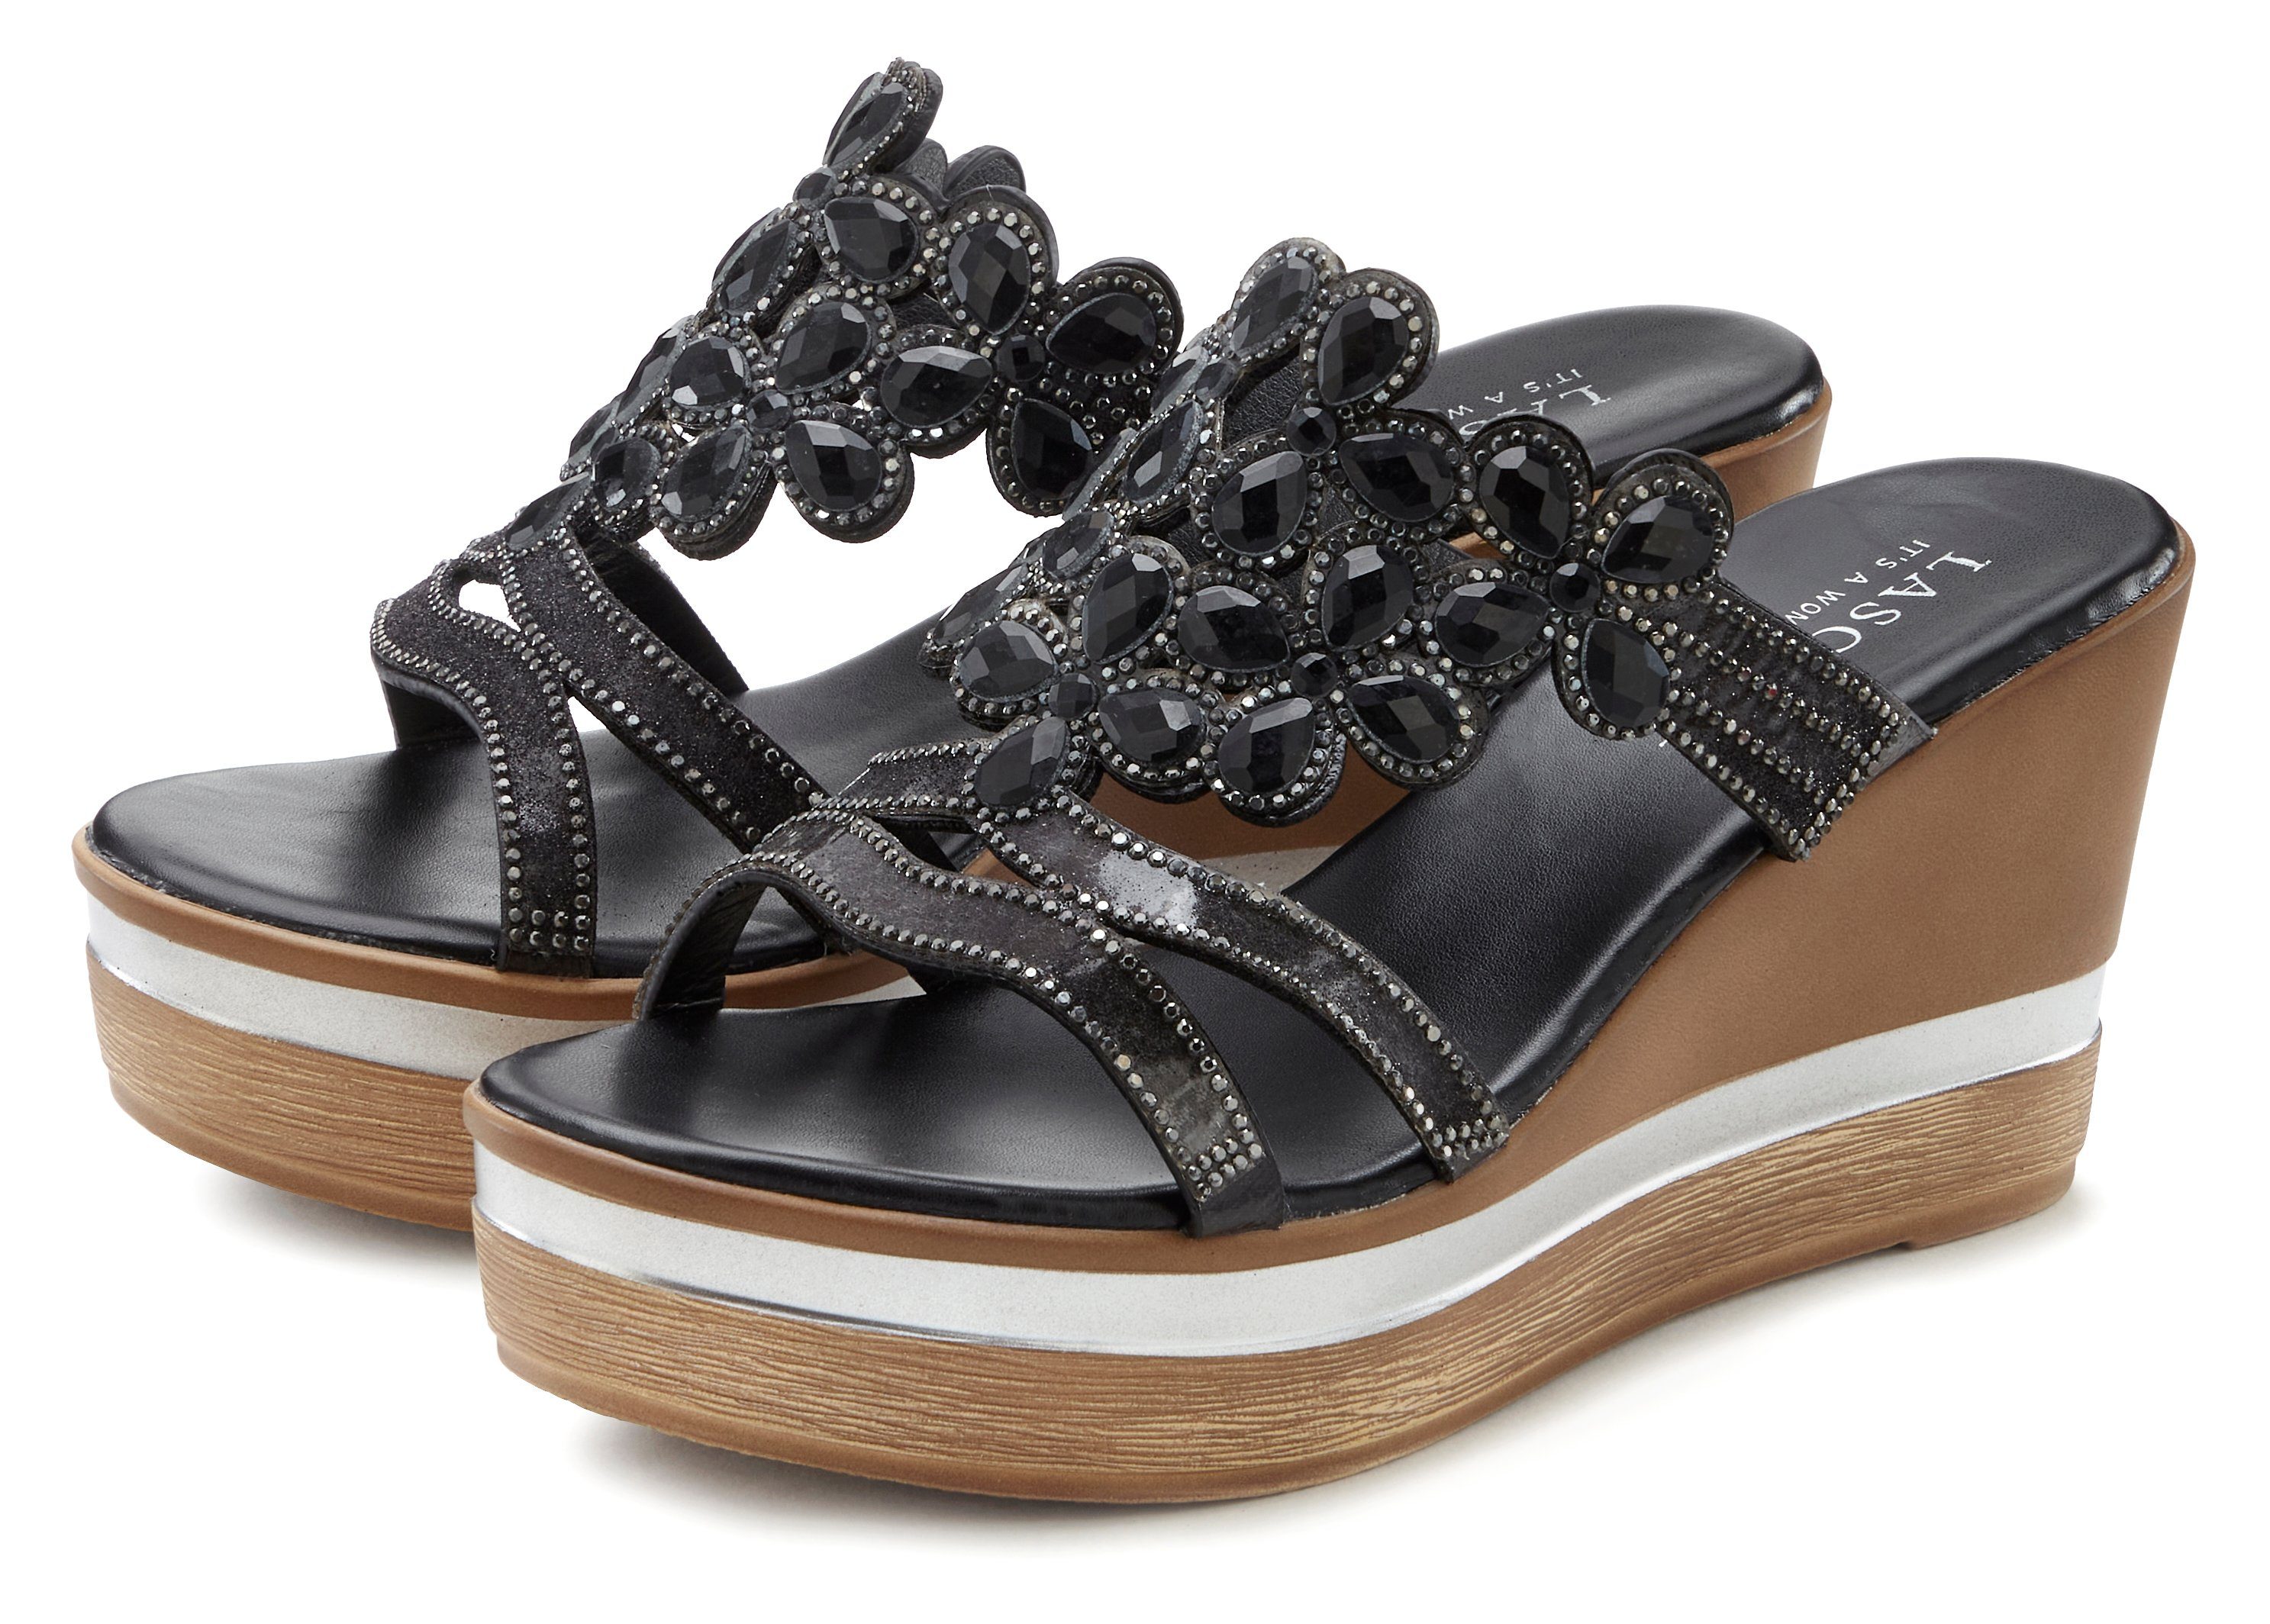 LASCANA Pantolette Mule, Sandale, offener Schuh mit Keilabsatz und aufwendiger Verzierung schwarz